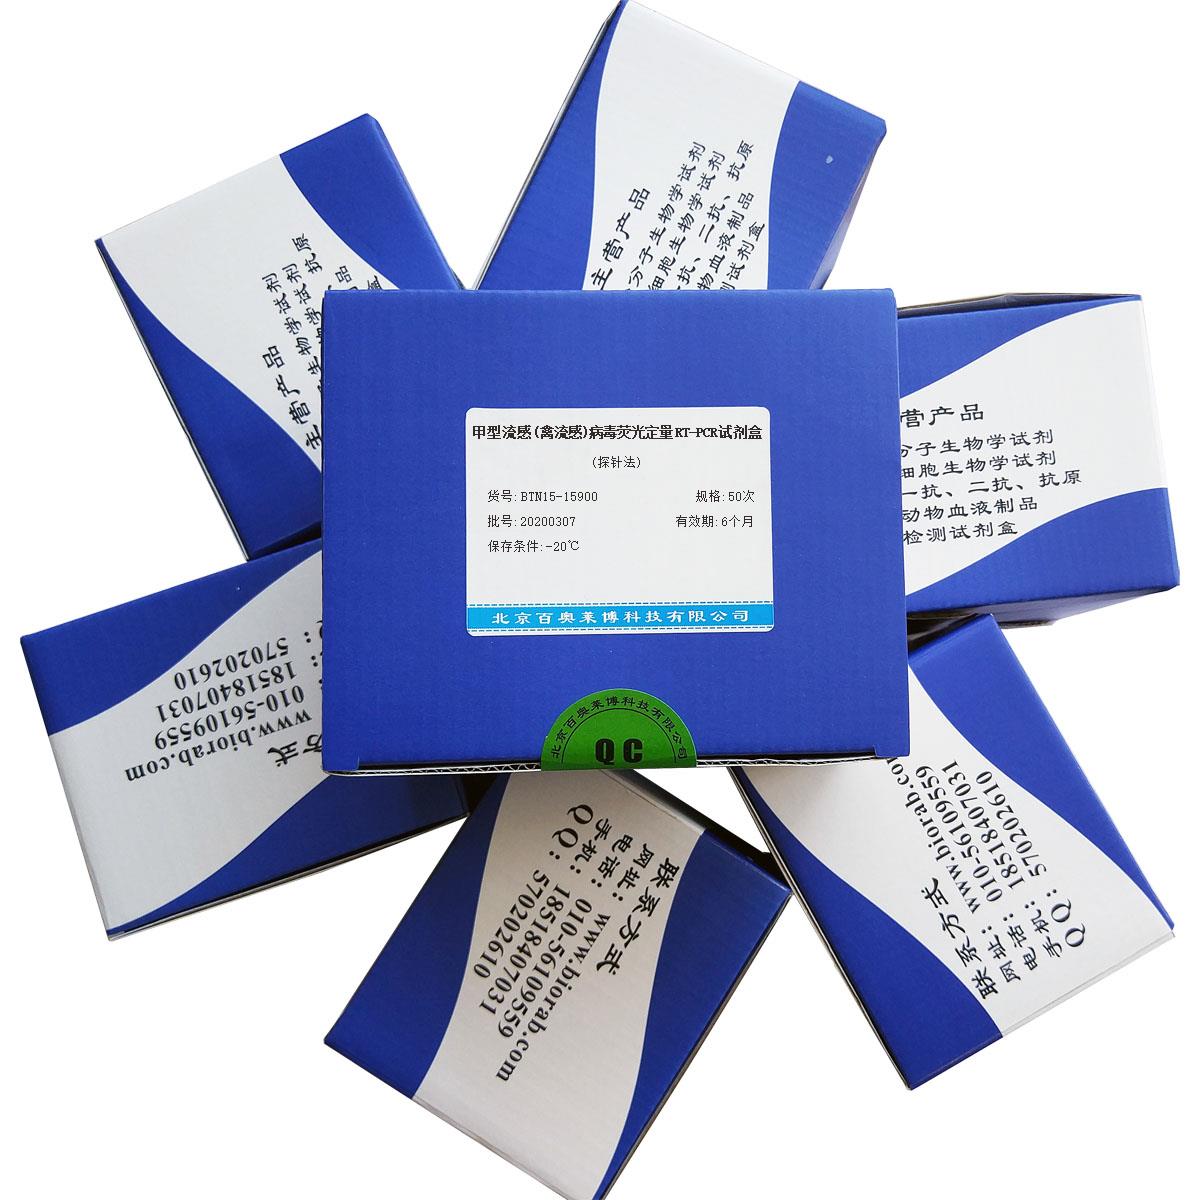 甲型流感(禽流感)病毒荧光定量RT-PCR试剂盒(探针法)